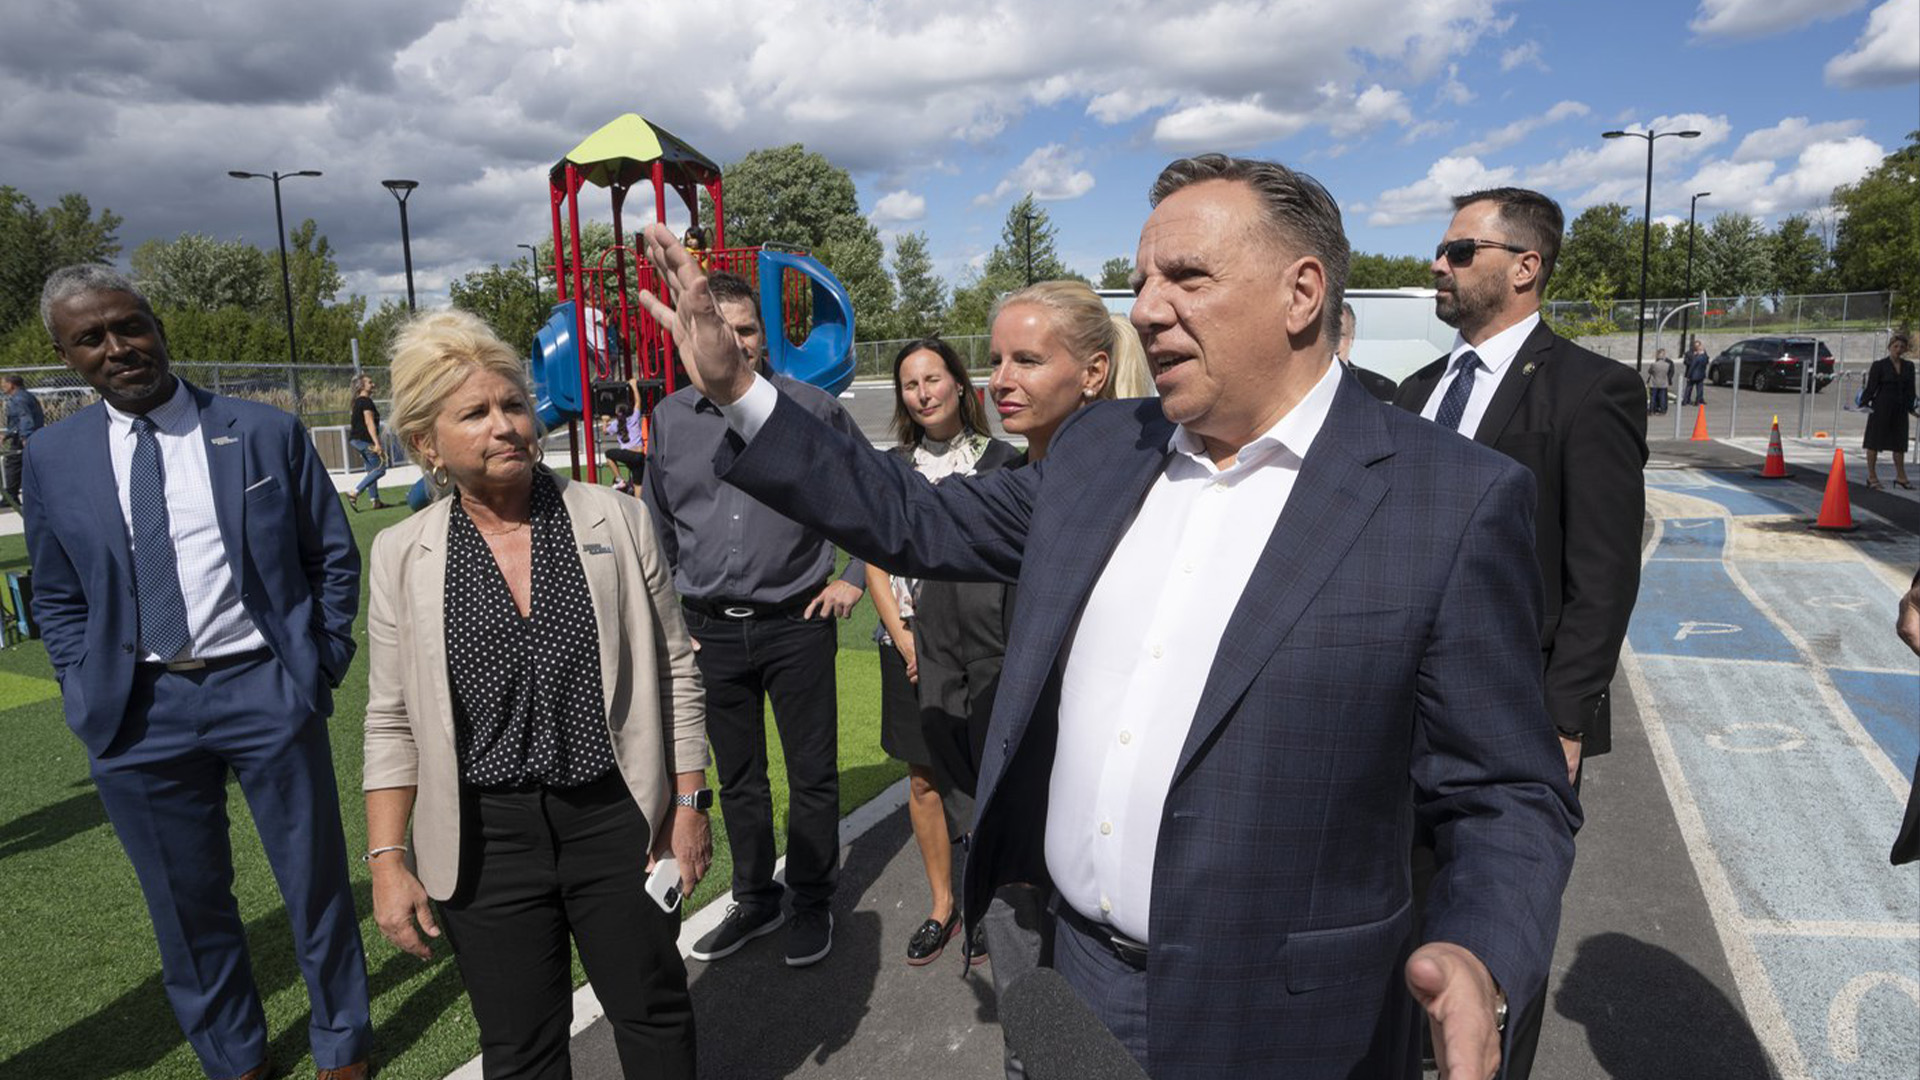 Le chef de la Coalition Avenir du Québec, François Legault, visite une école alors qu'il fait campagne le mercredi 31 août 2022 à Montréal.